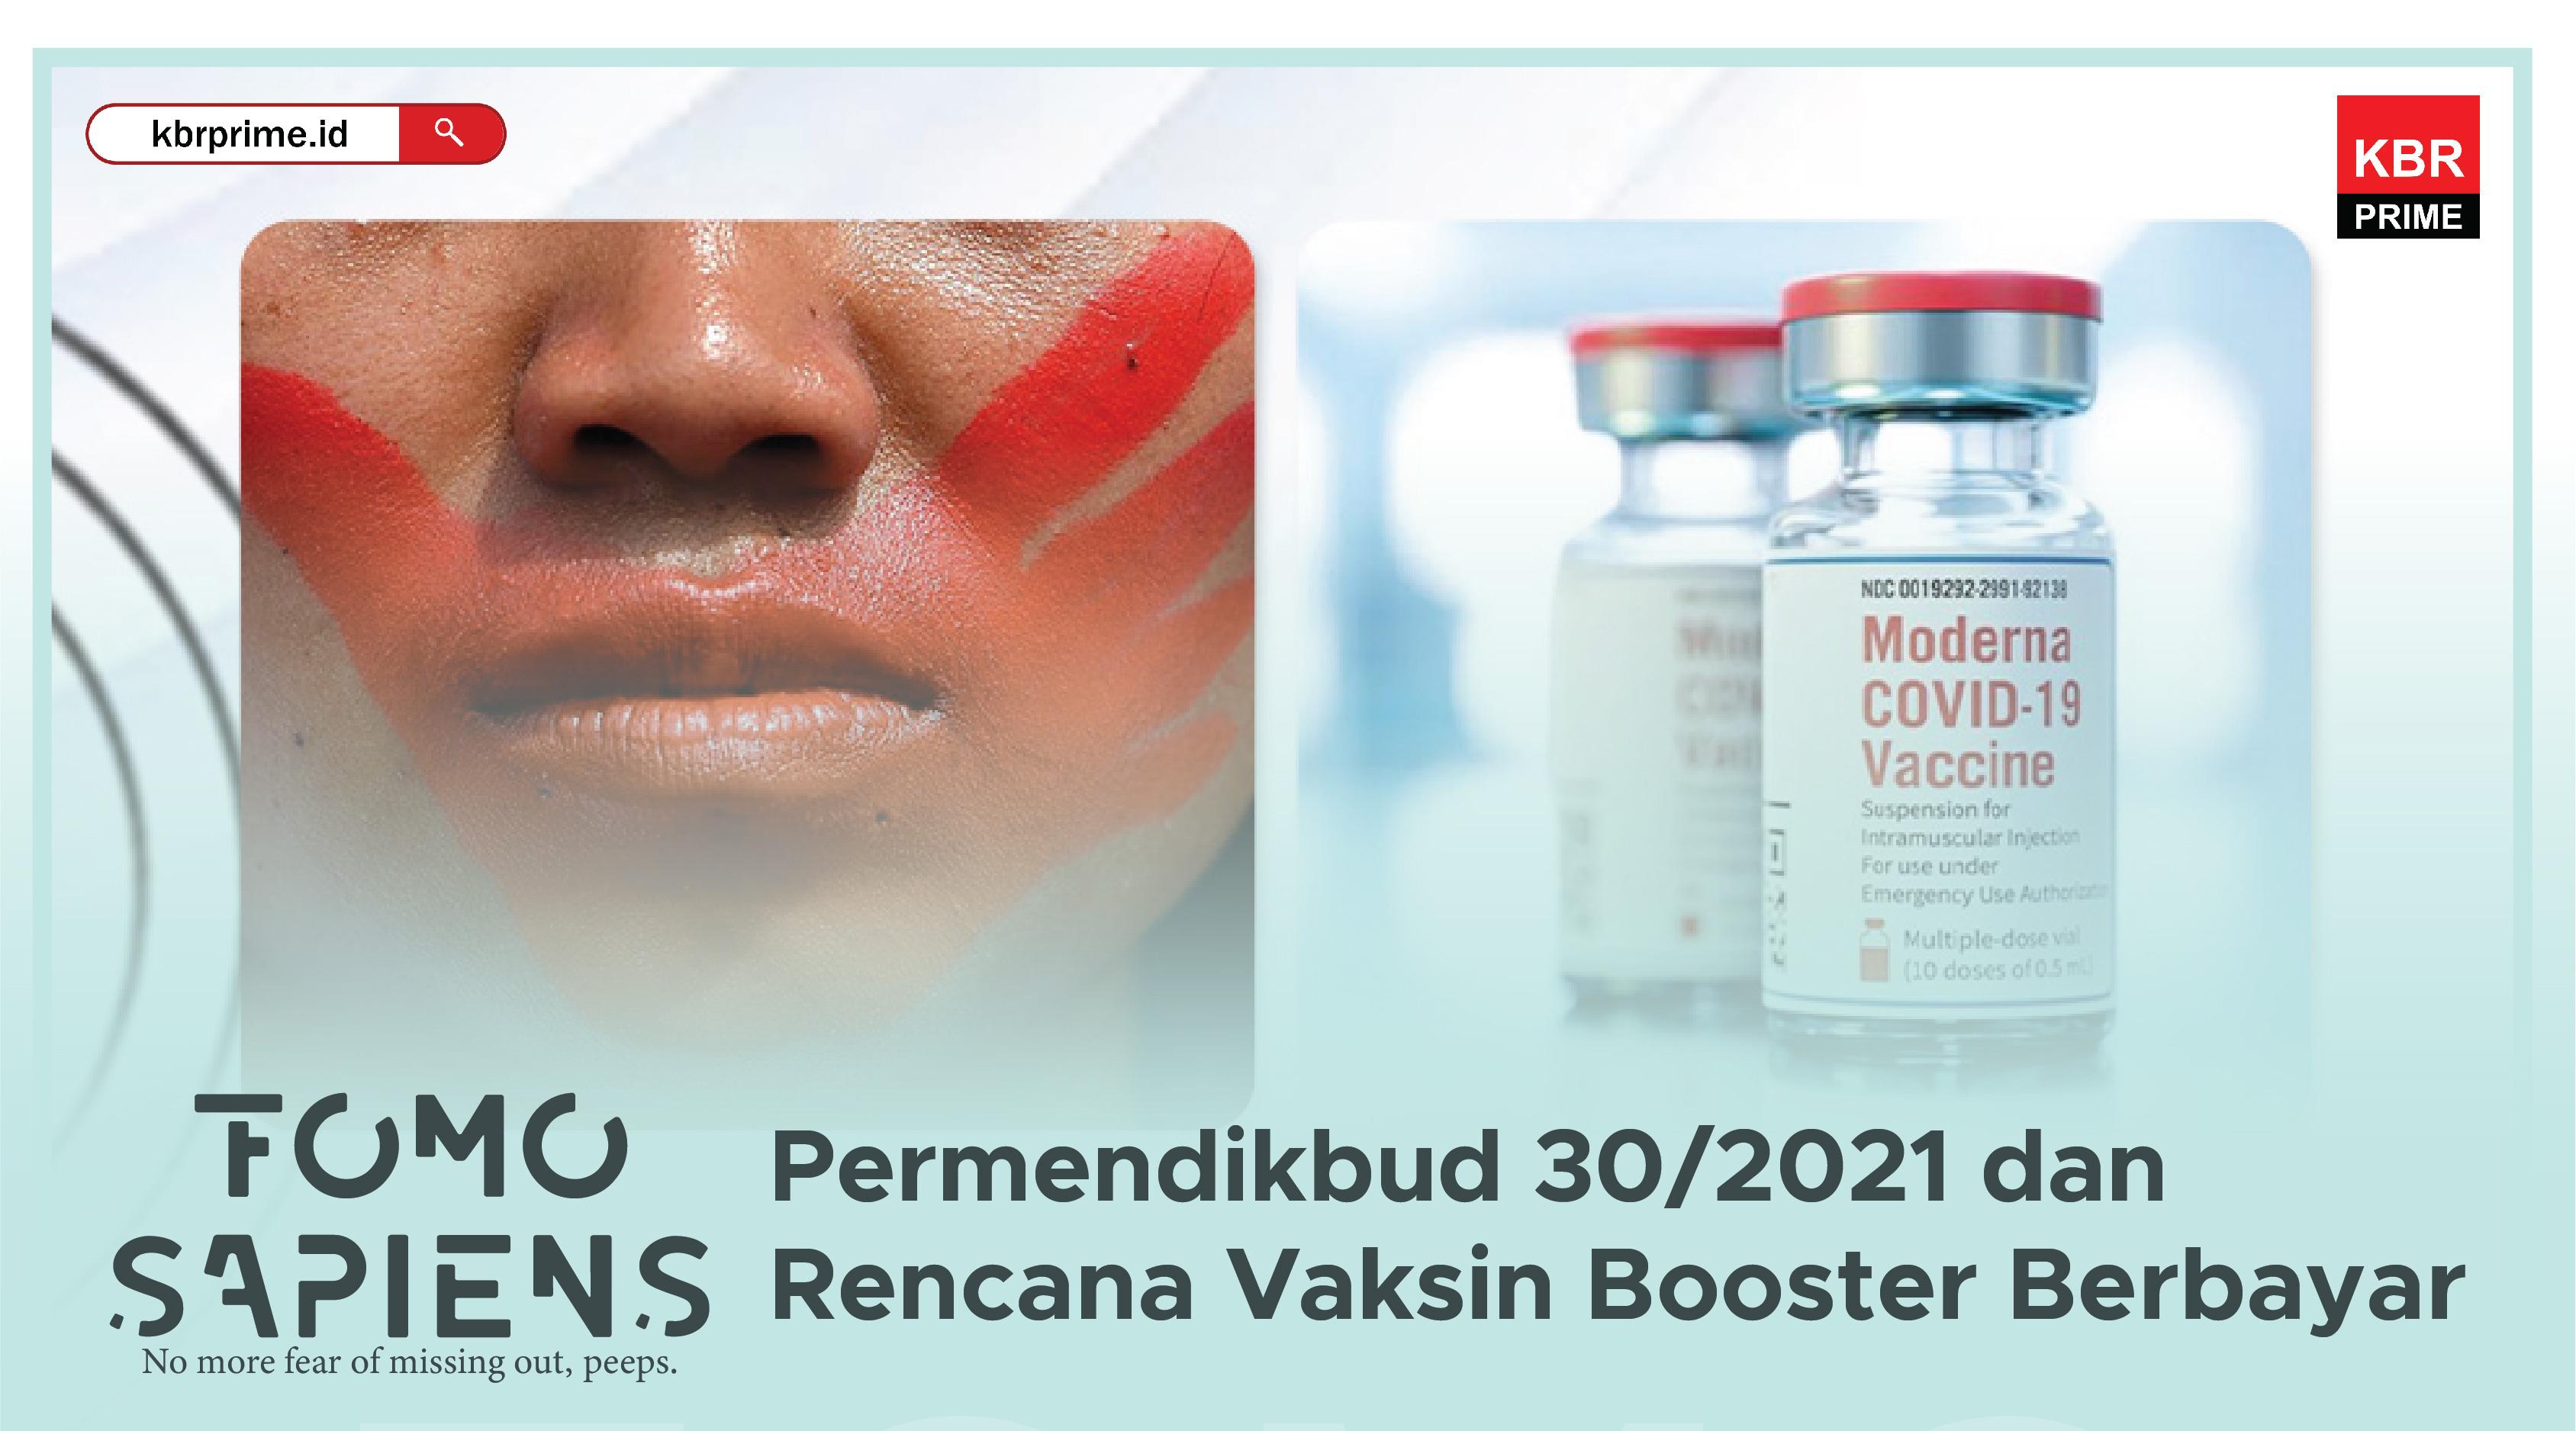 FOMO Sapiens : Permendikbudristek 30/2021 dan Rencana Vaksin Booster Berbayar